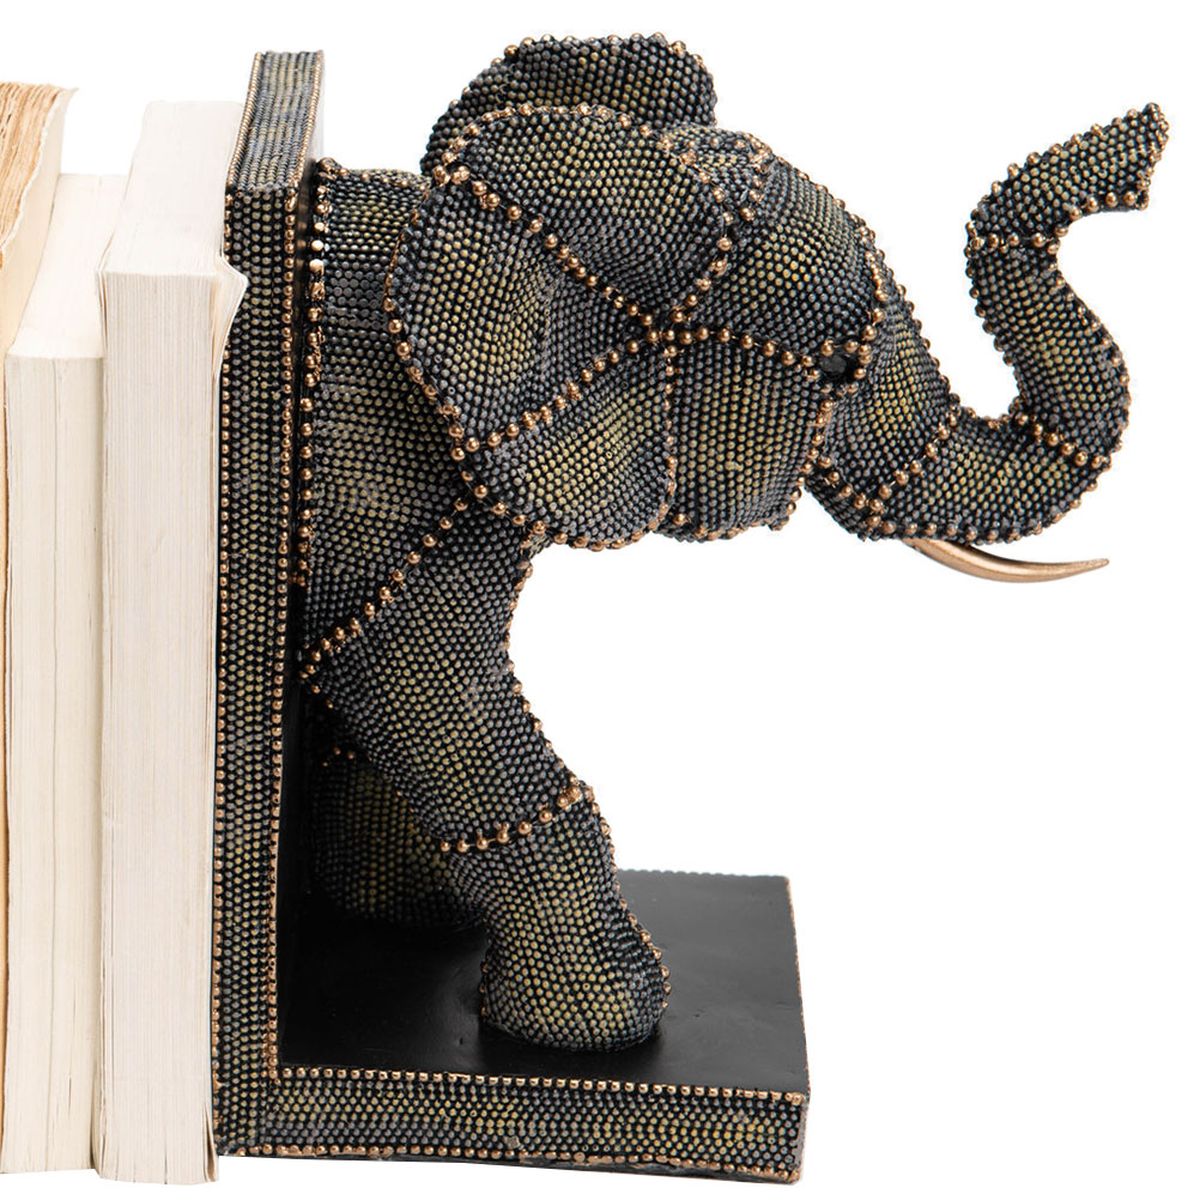 Stop-livres Elephant en rsine